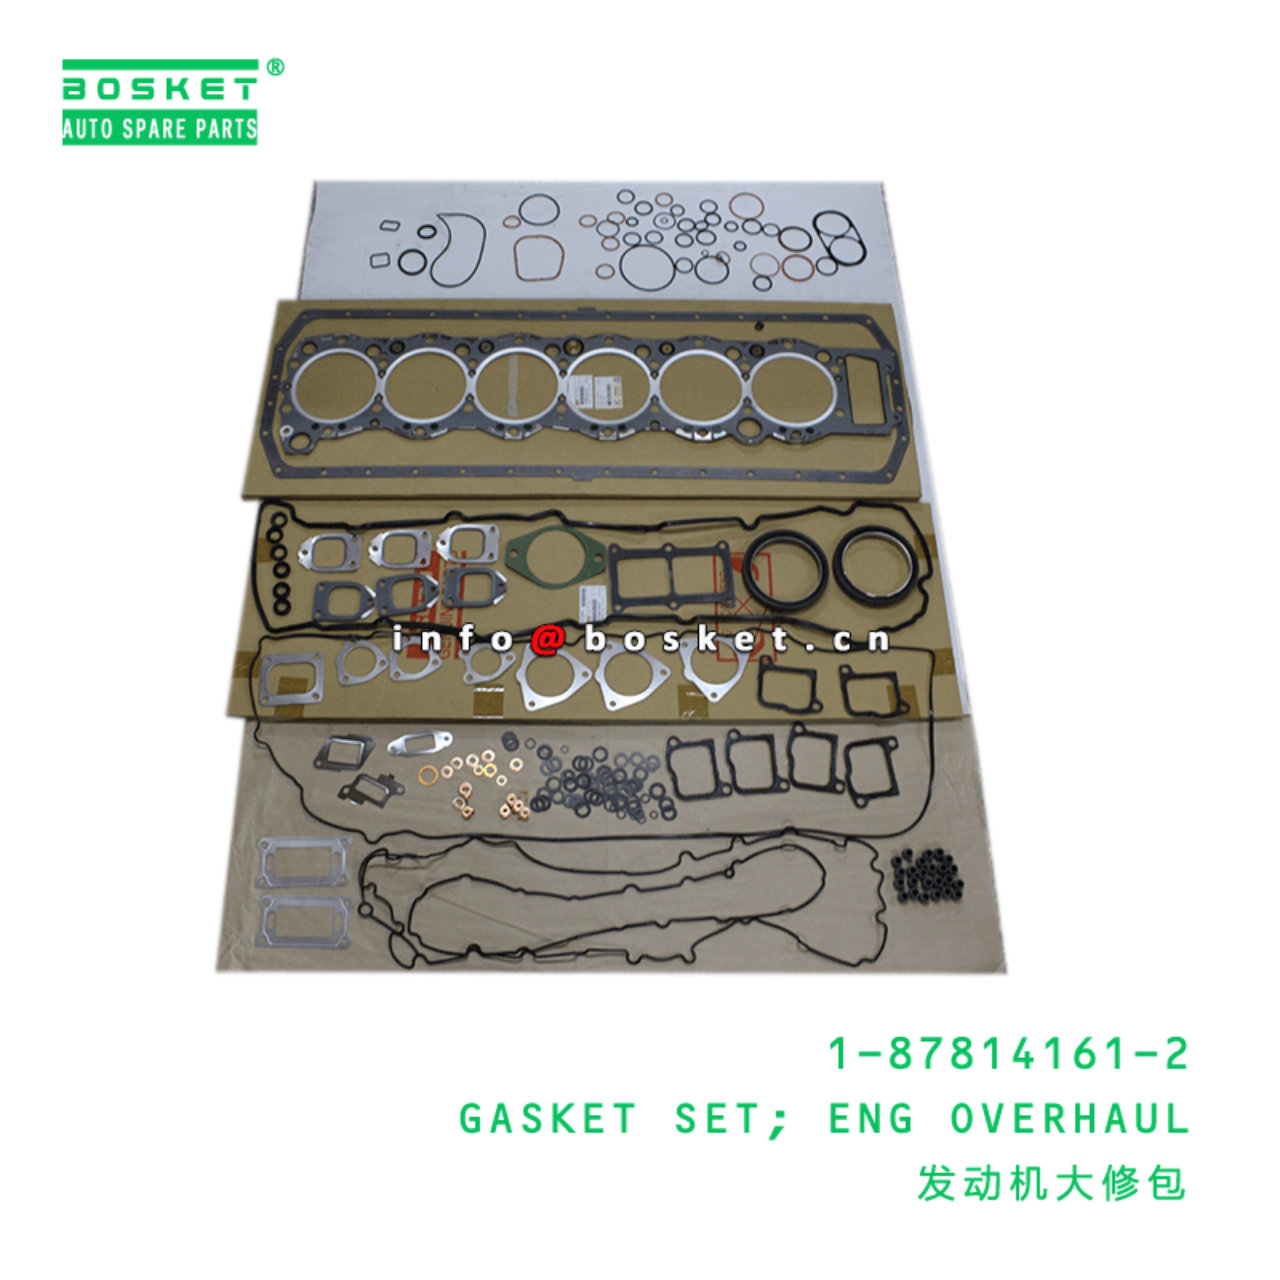 1-87814161-2 Engine Overhaul Gasket Set Suitable for ISUZU CYZ 1878141612